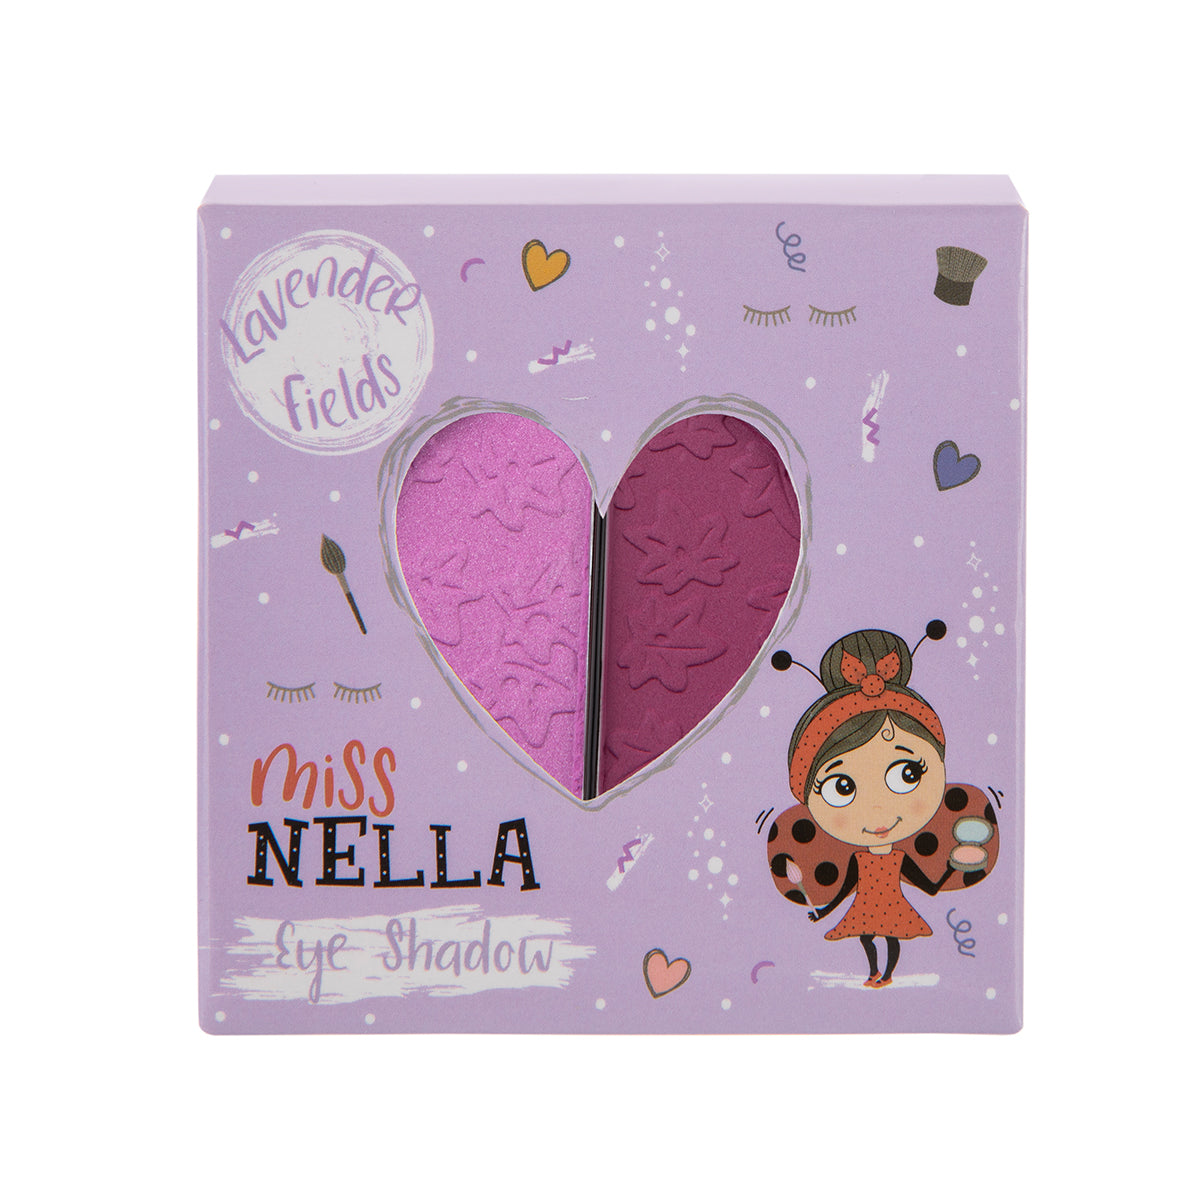 Laat de oogleden van jouw kindje shinen met de oogschaduw lavender fields van het merk Miss Nella. De make-up speciaal ontworpen voor kinderen en is vrij van chemicaliën, parfum en alcohol. In verschillende kleuren. VanZus